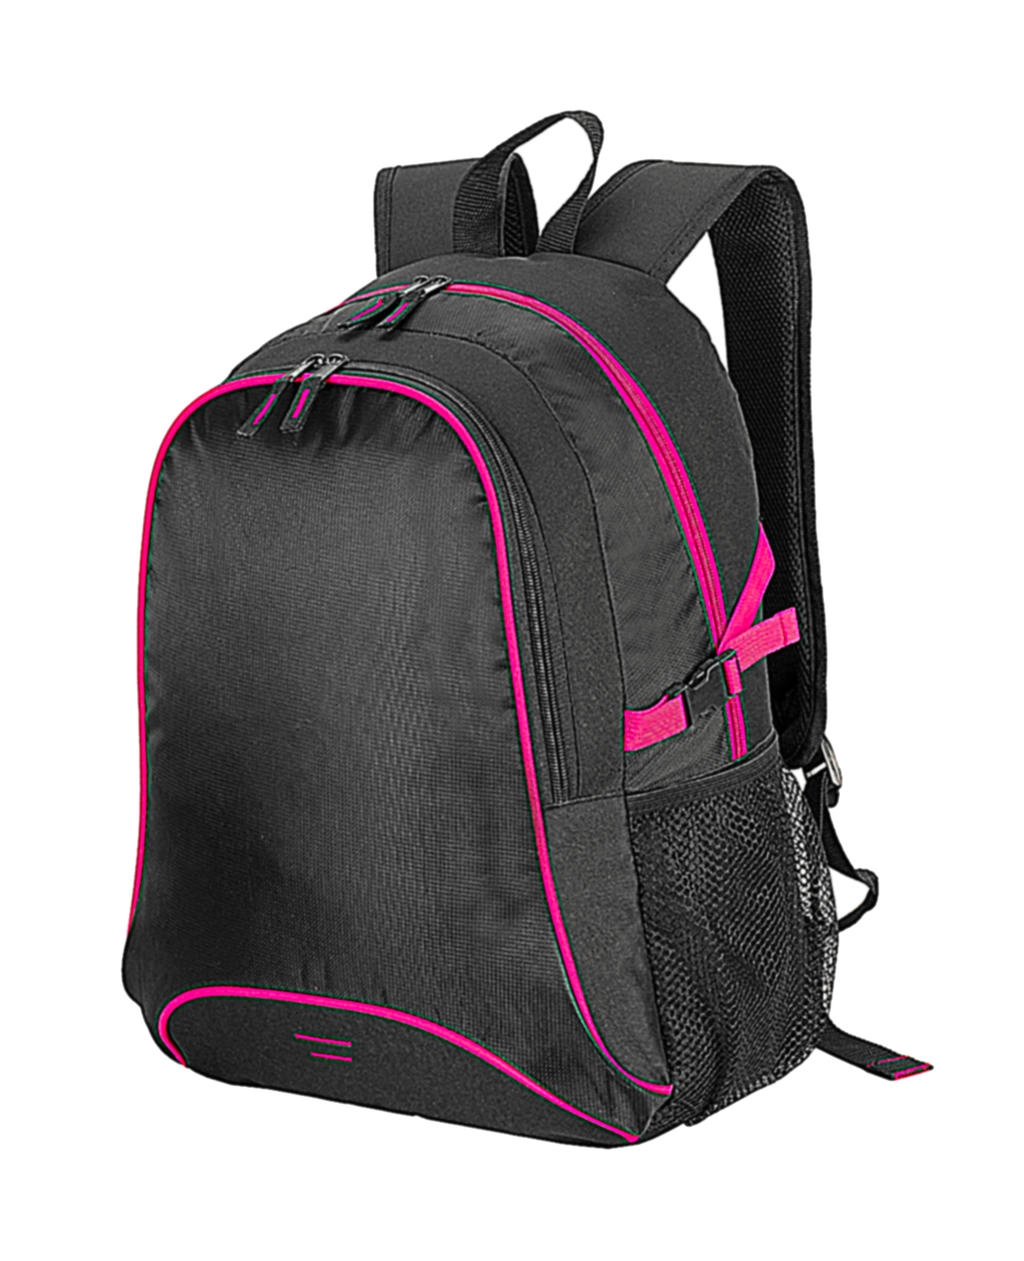 Osaka Basic Backpack zum Besticken und Bedrucken in der Farbe Black/Hot Pink mit Ihren Logo, Schriftzug oder Motiv.